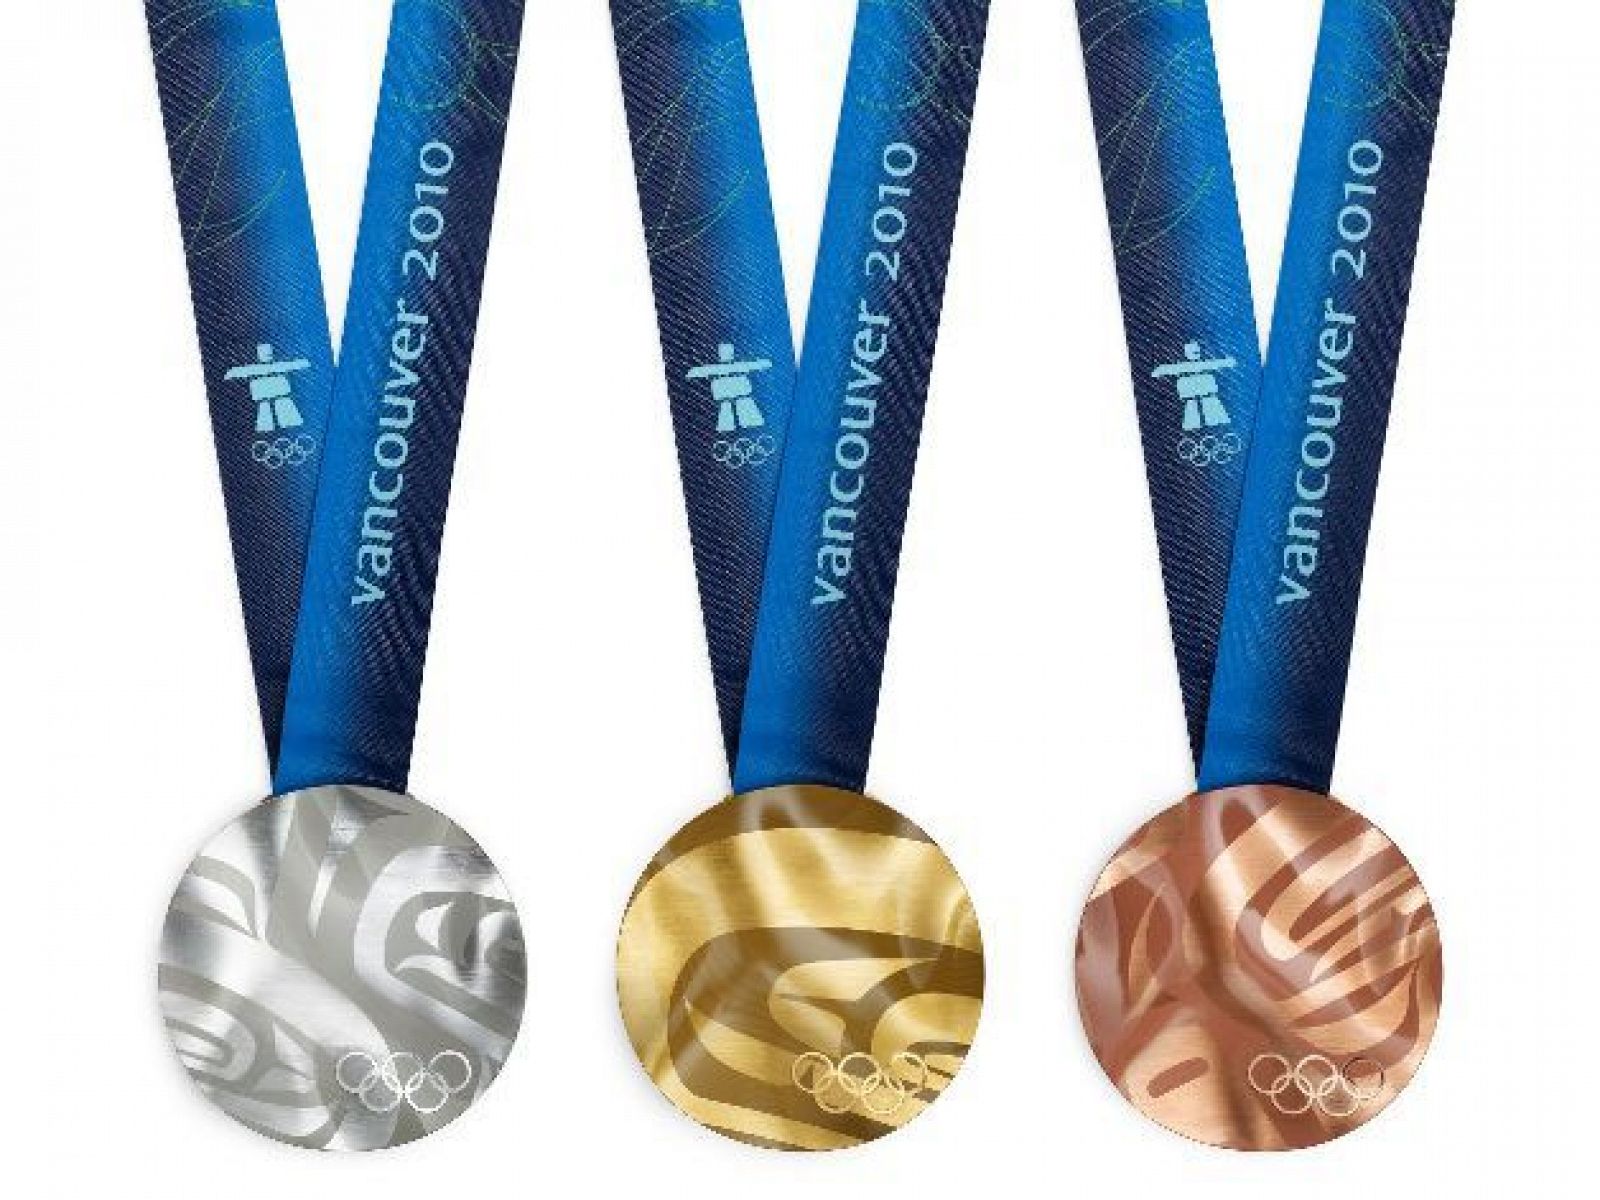 Las 1.014 medallas que se entregarán en los Juegos de Invierno tienen cada una un diseño diferente.